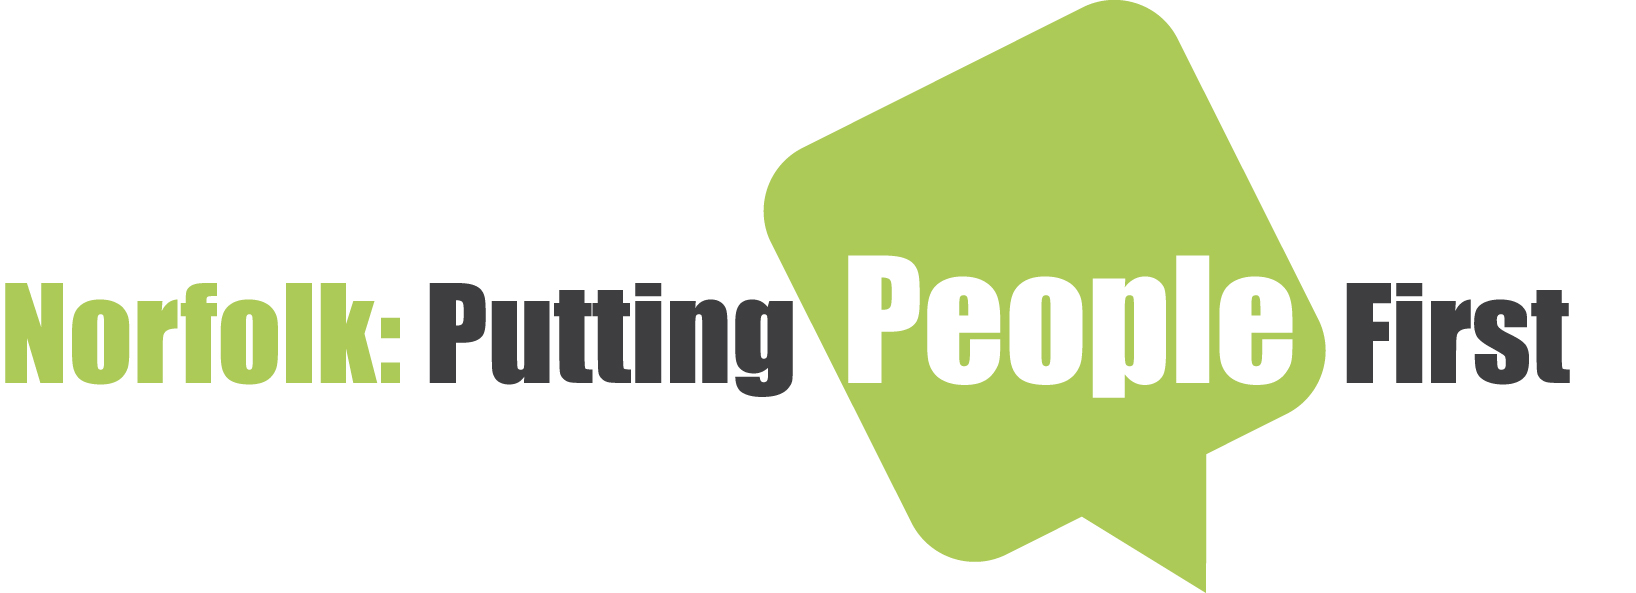 Norfolk Putting People First logo